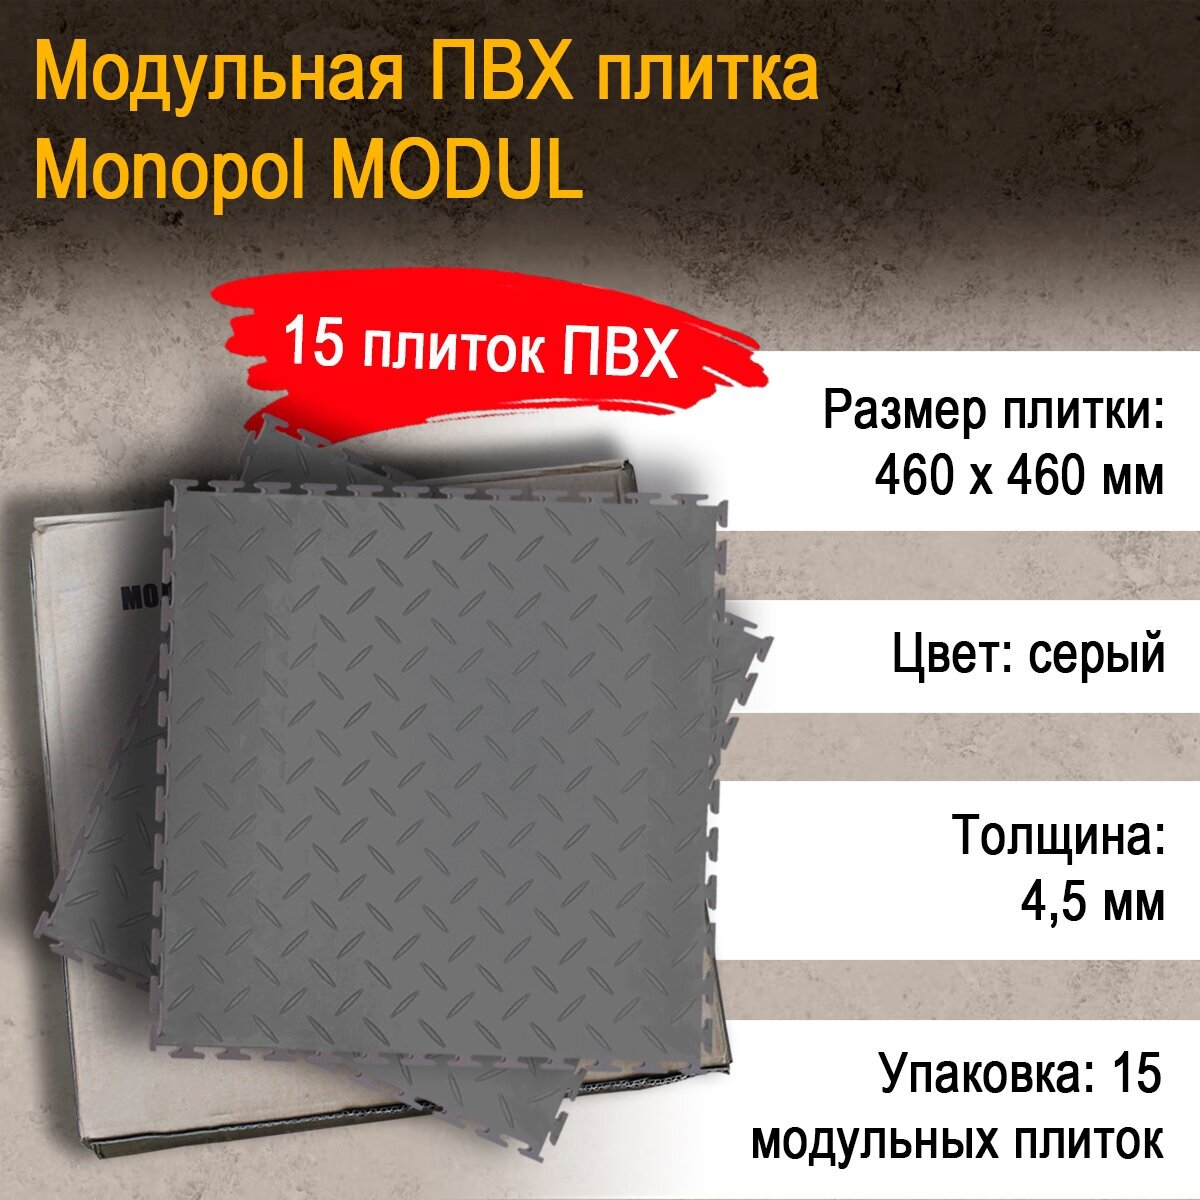 Monopol MODUL модульная плитка ПВХ (цвет: темно- серый; размер 4.5х460х460мм), 15 шт